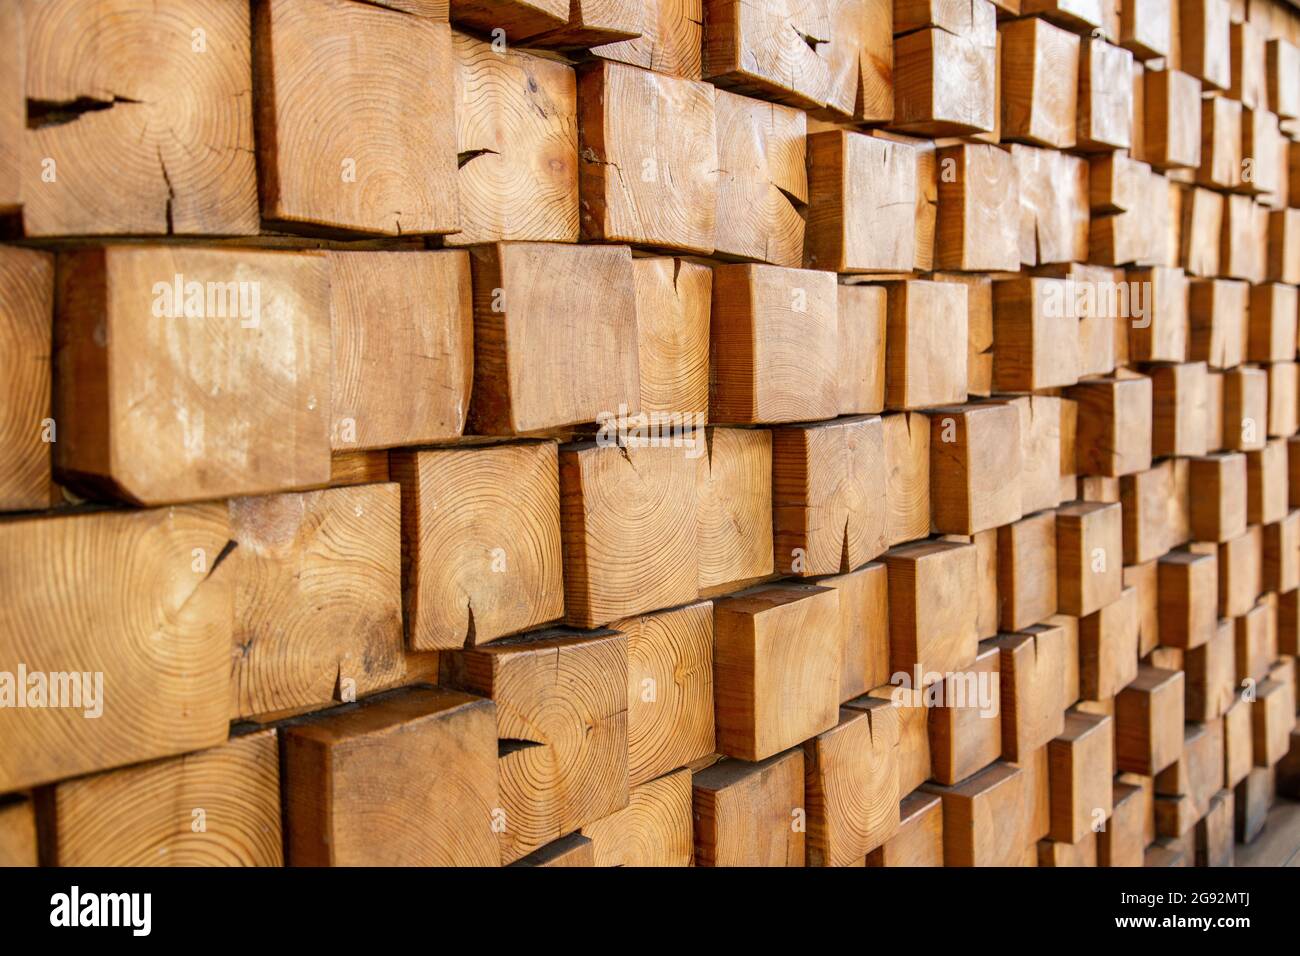 Cubos de madera Stock Photos, Royalty Free Cubos de madera Images